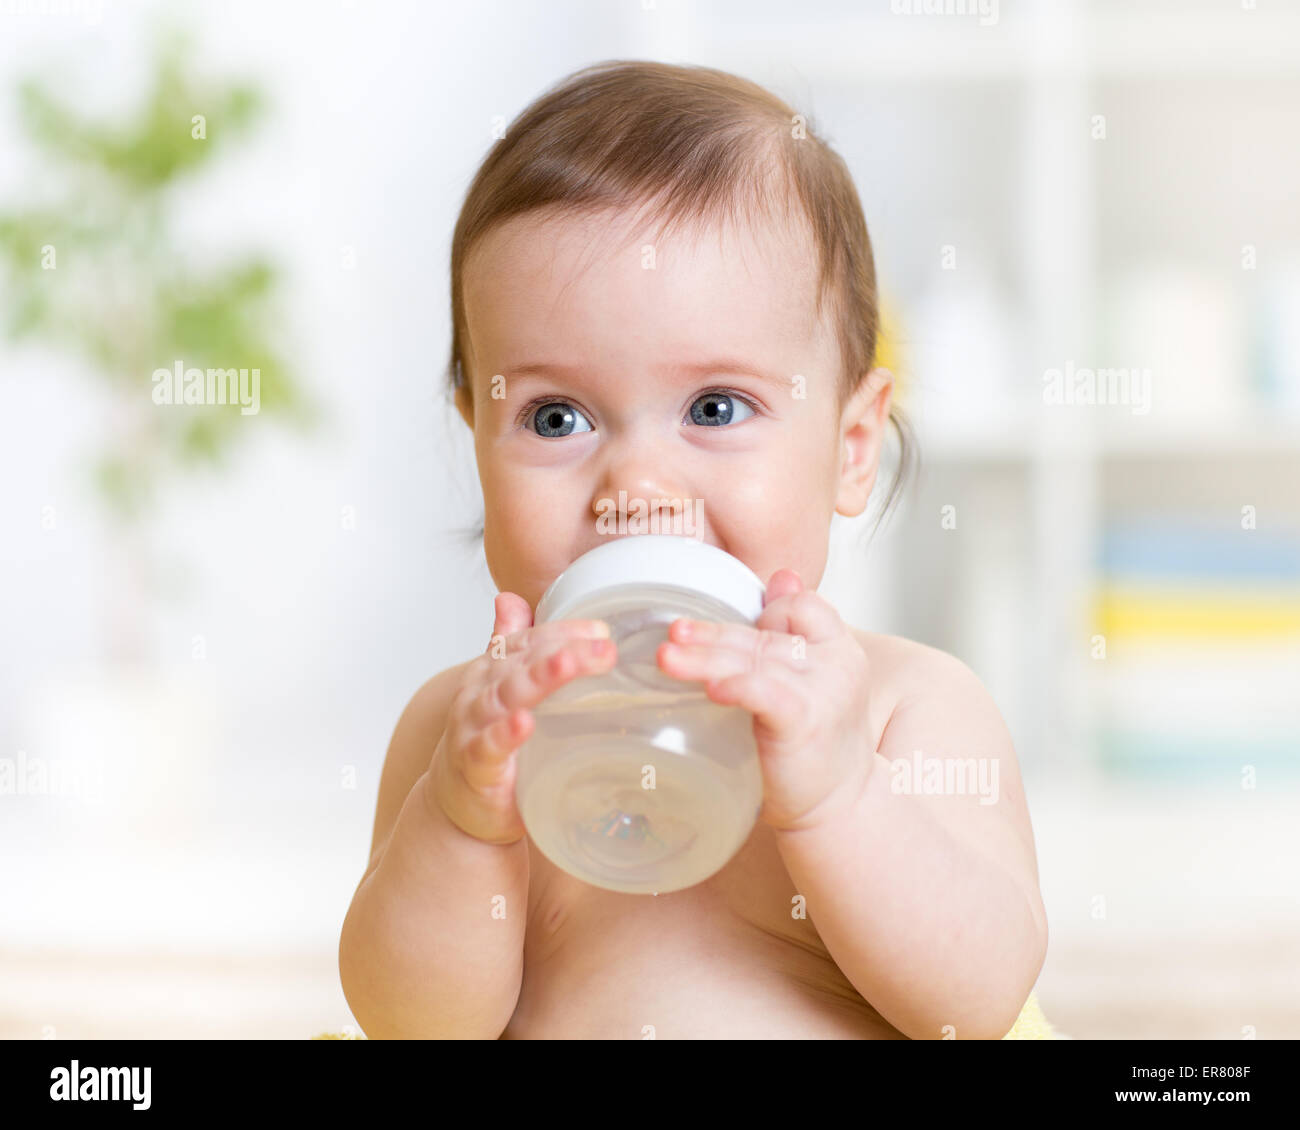 Sweet baby girl holding bouteille et l'eau potable Banque D'Images